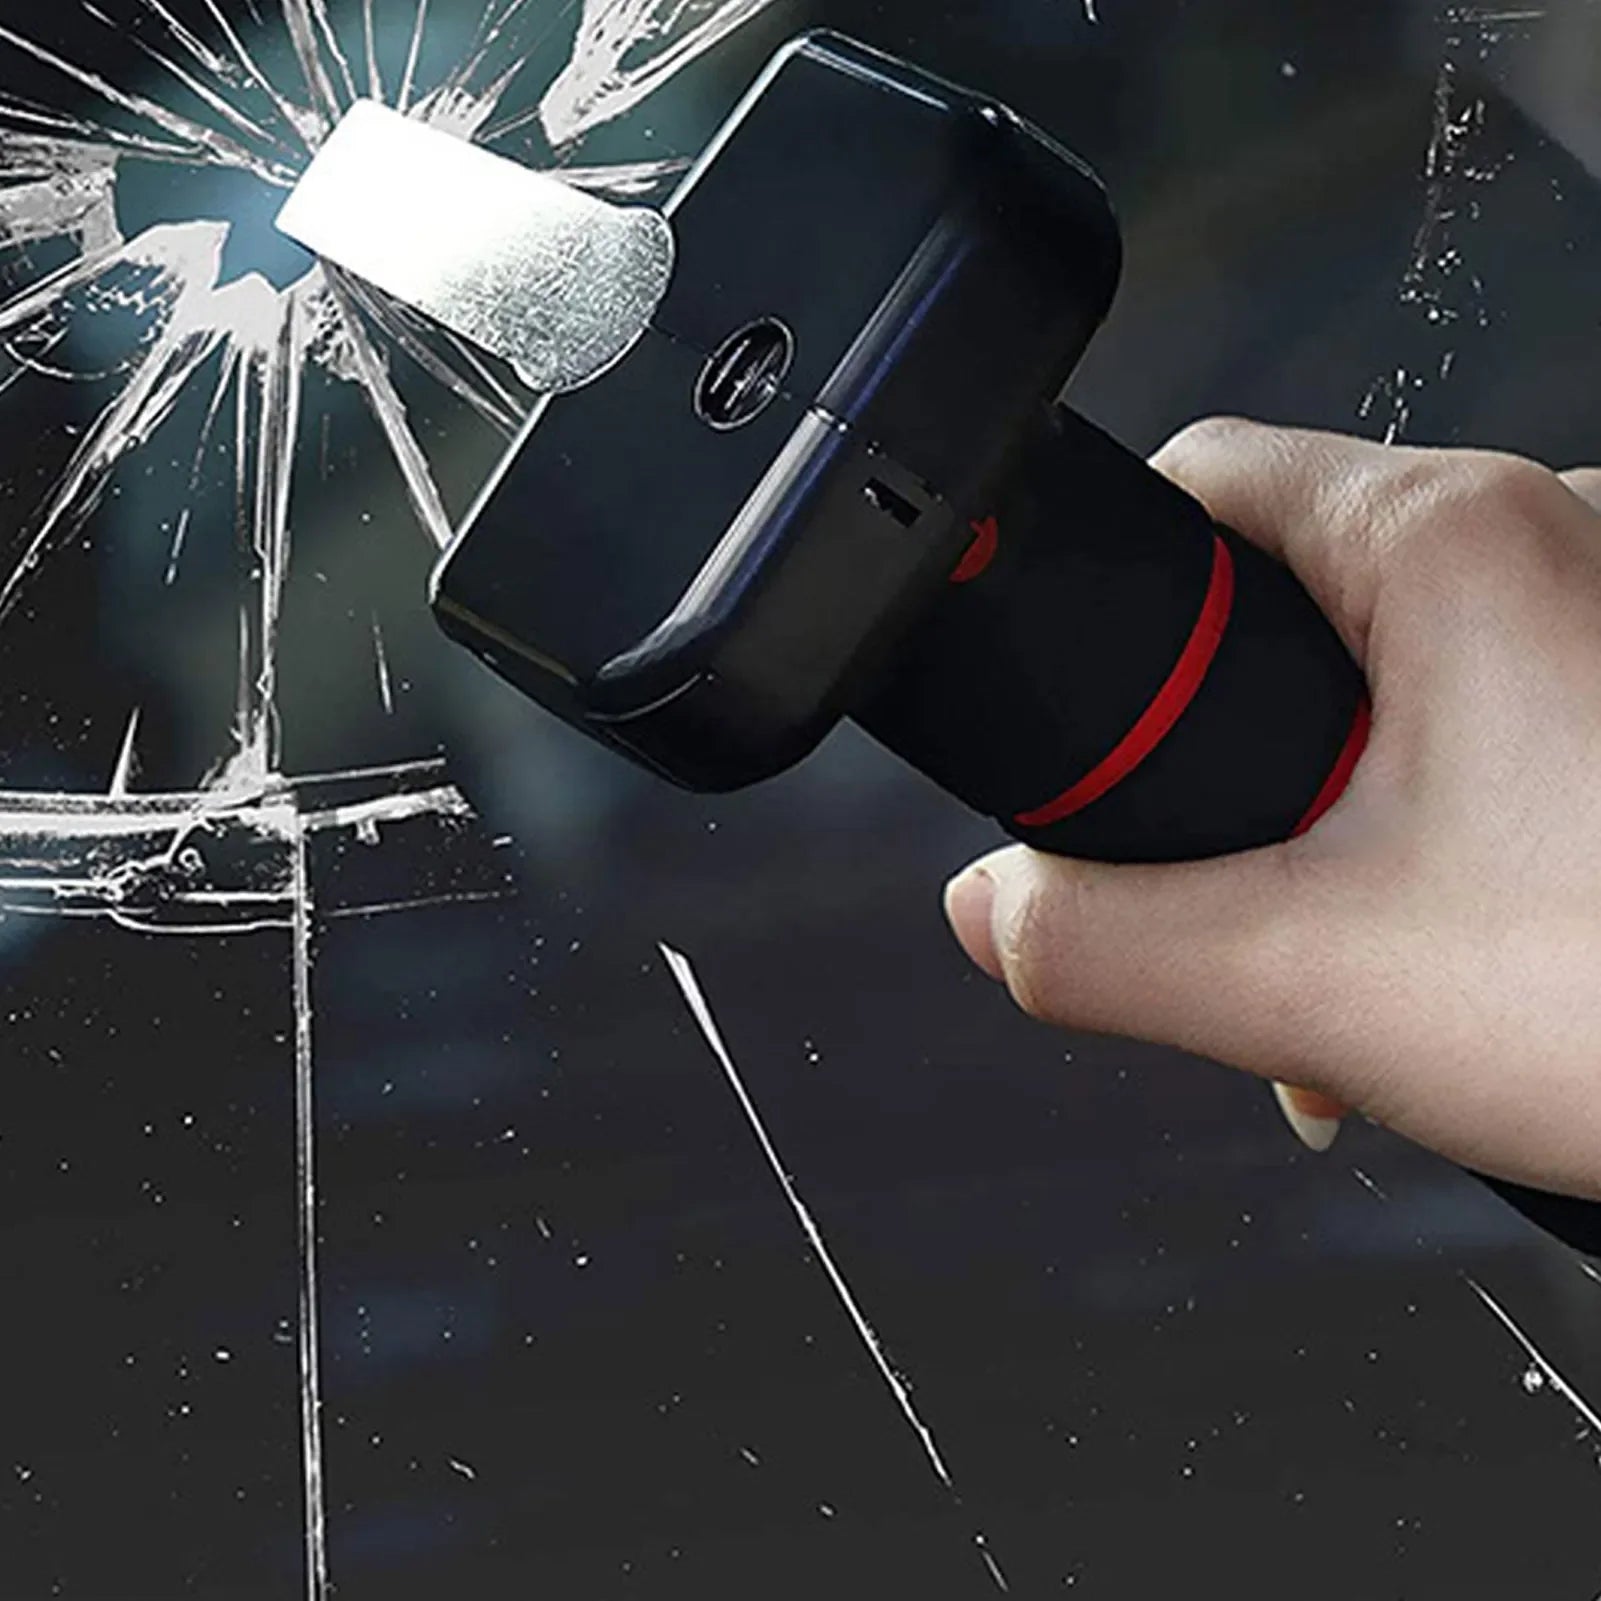 Suporte de Segurança Universal para Carros: A solução para entrada/saída segura, com cortador de cinto de segurança e quebra-vidros de emergência.